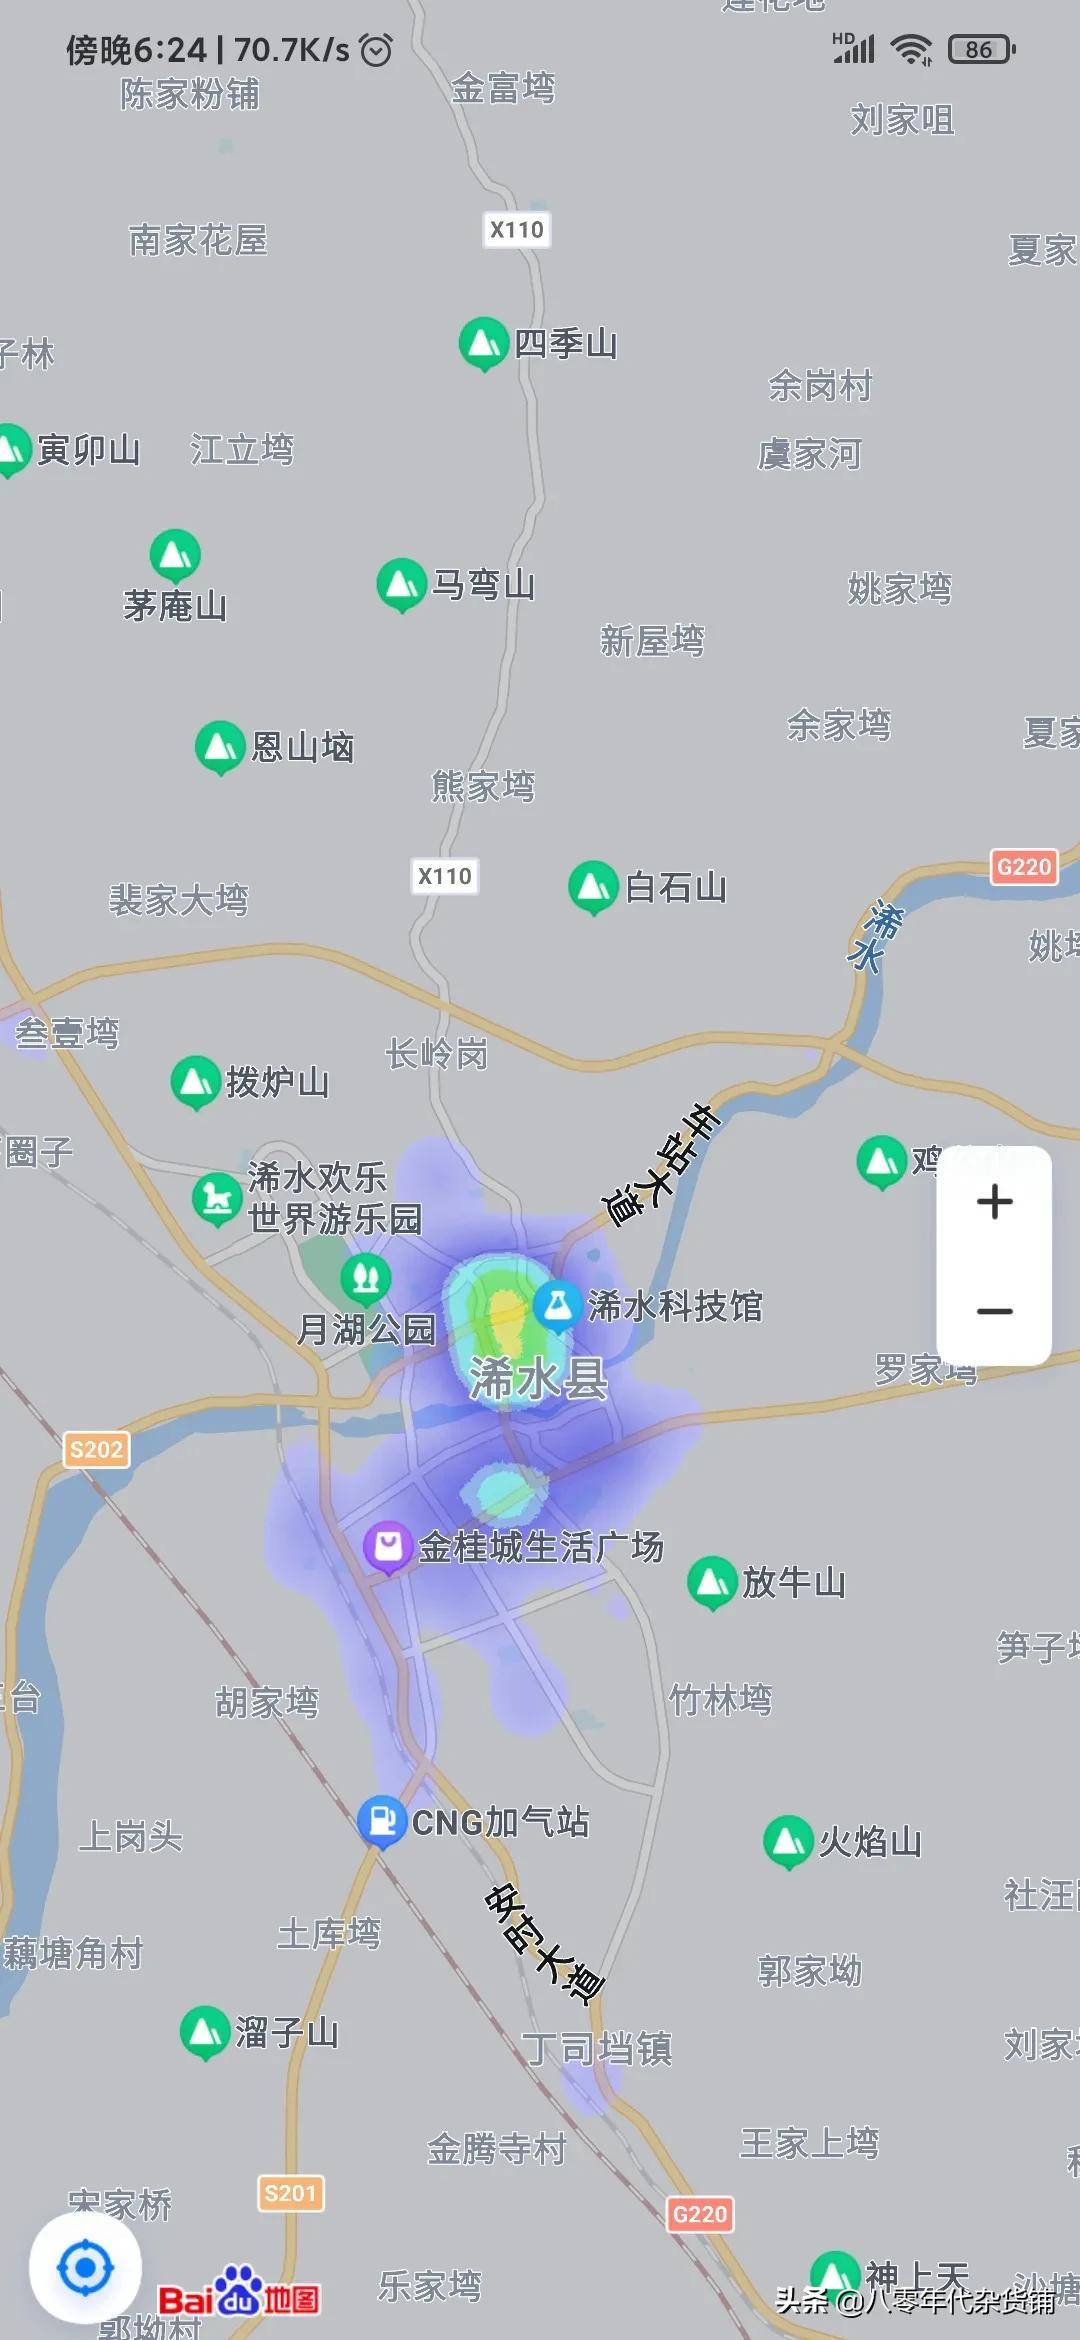 方舆 - 南部 - 黄冈市红安县行政区划图 - Powered by phpwind